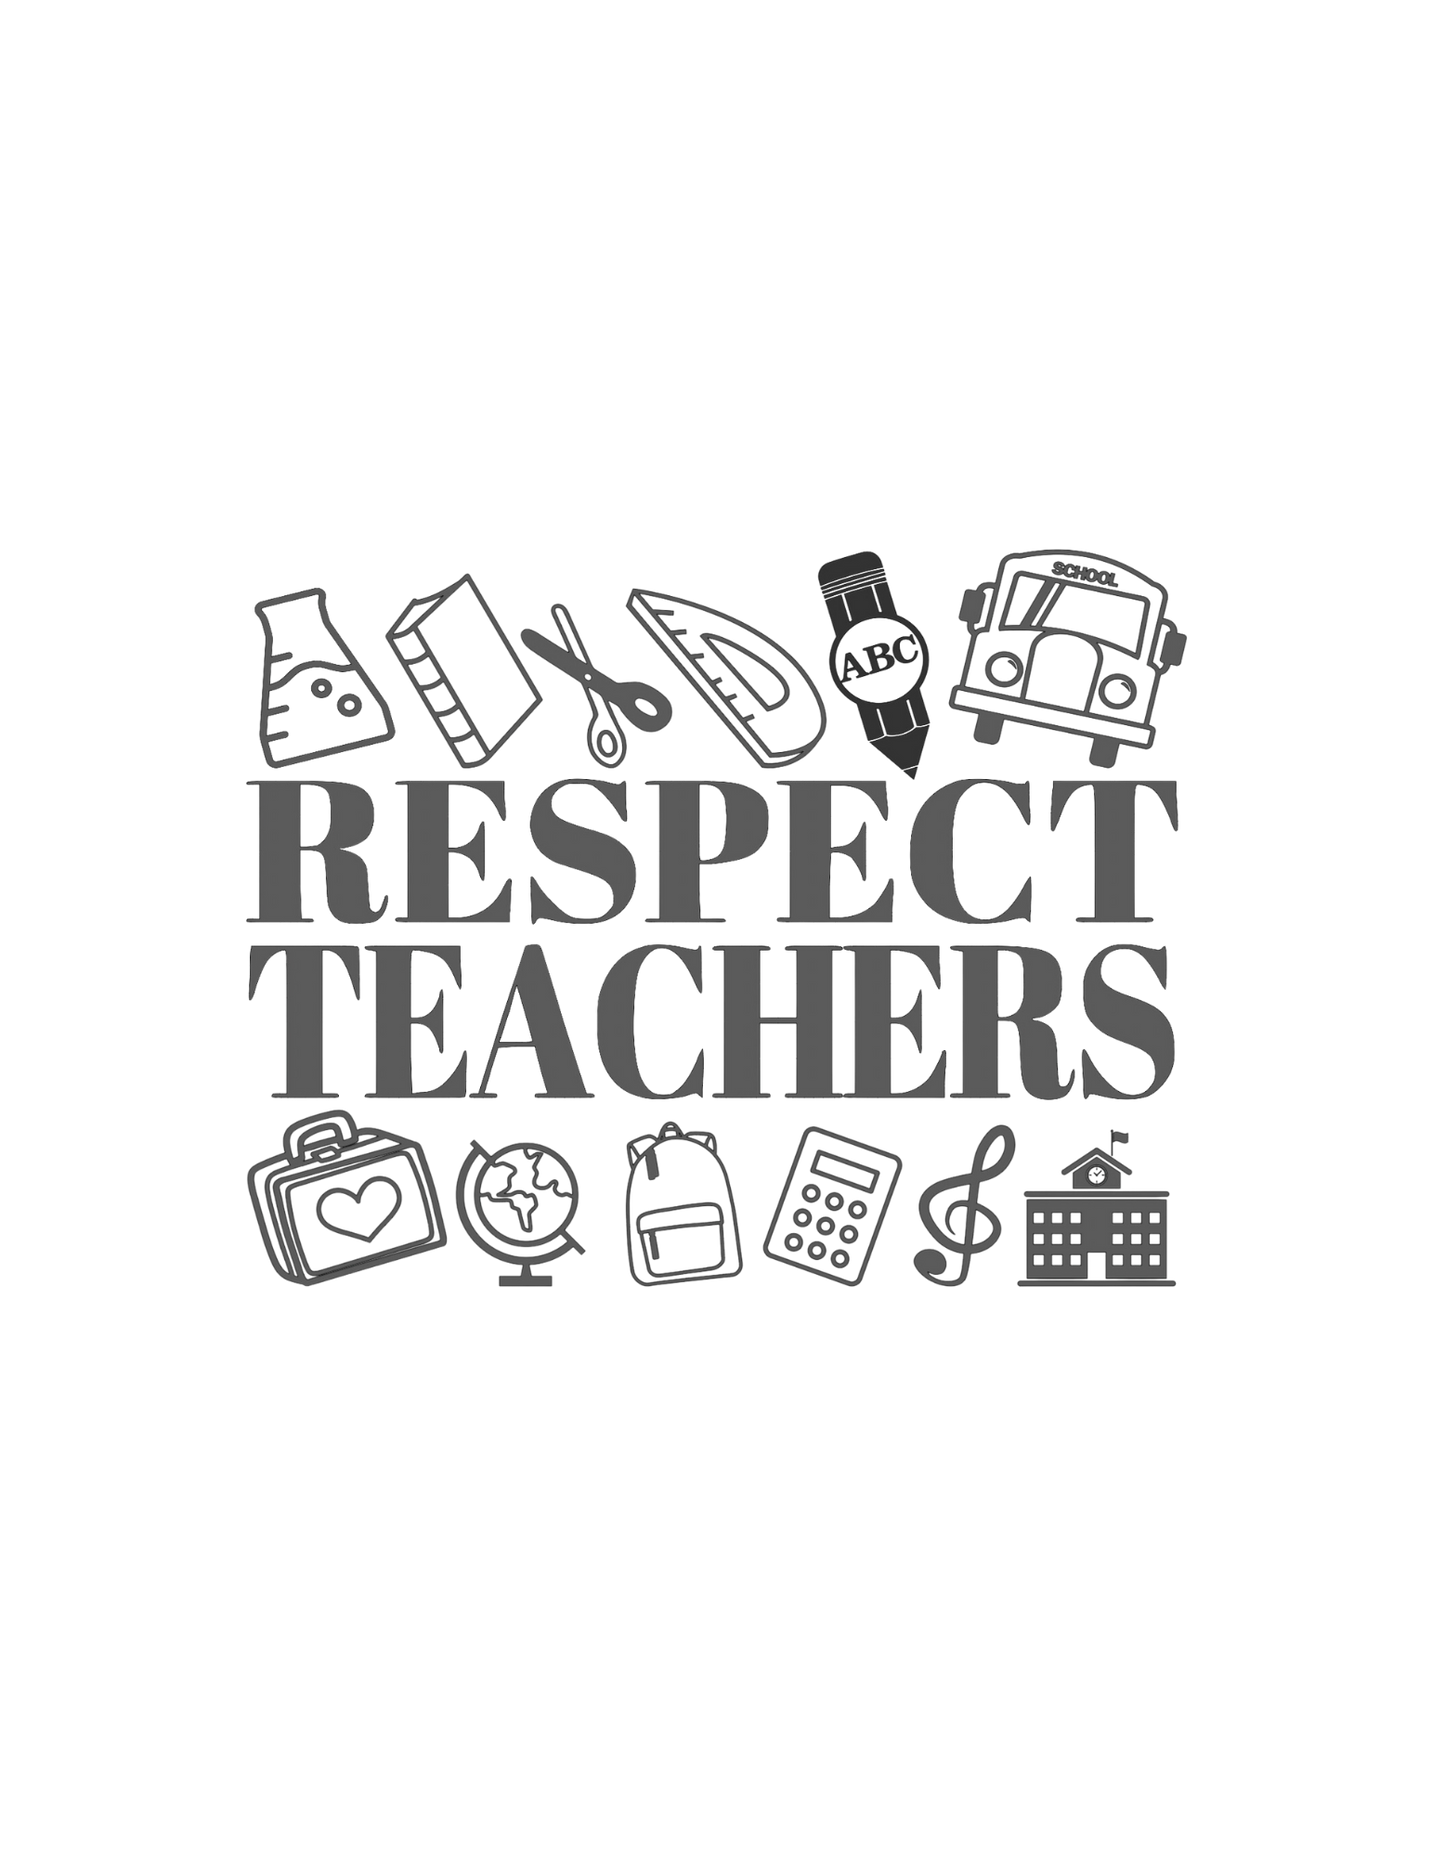 Respect Teachers